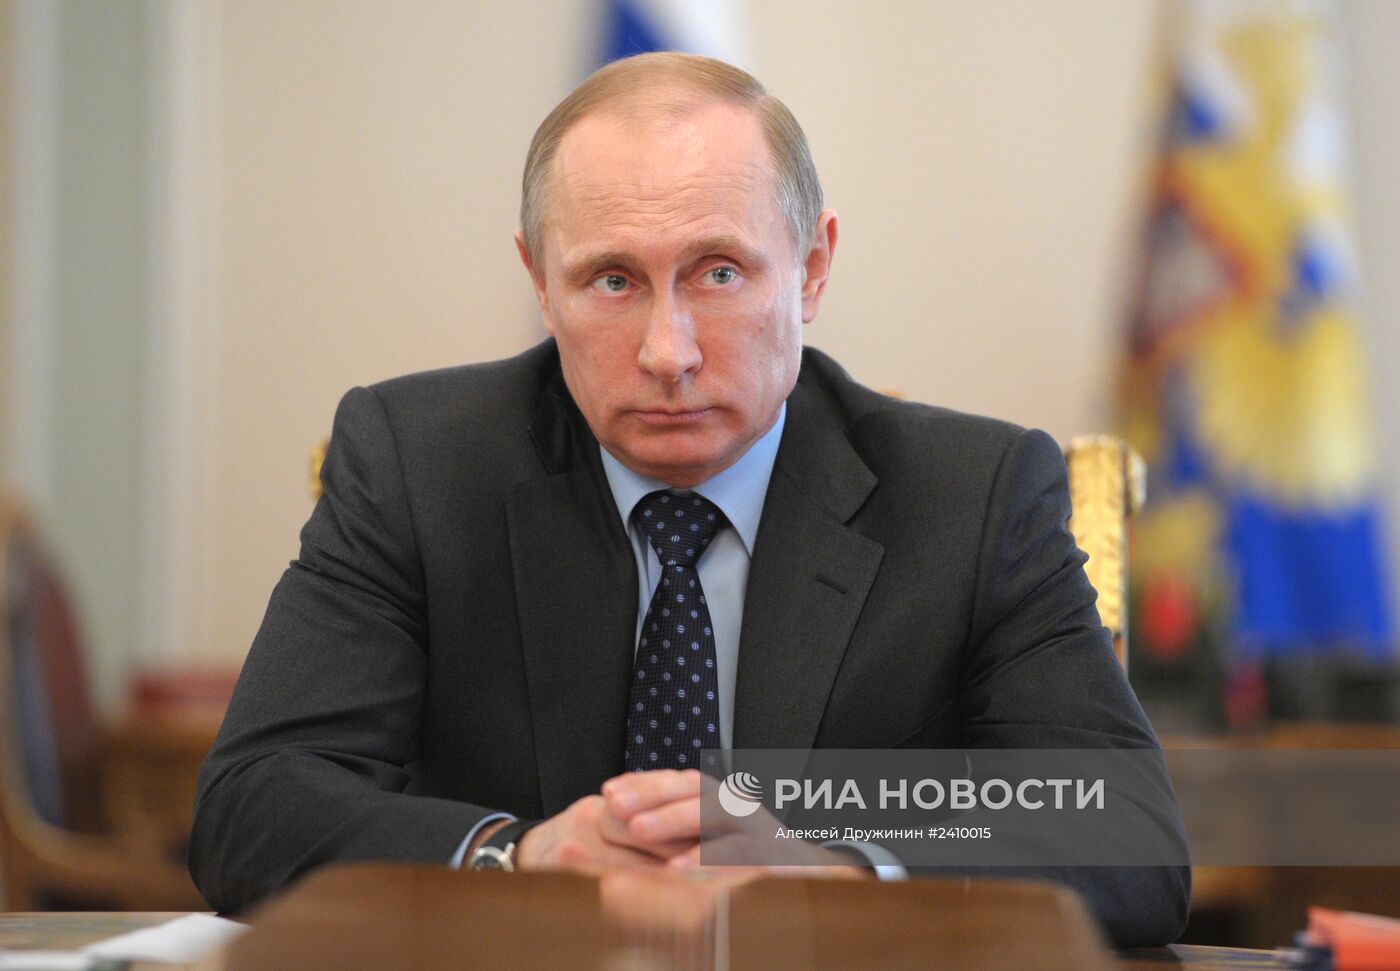 В.Путин провел совещание с
руководством российского правительства